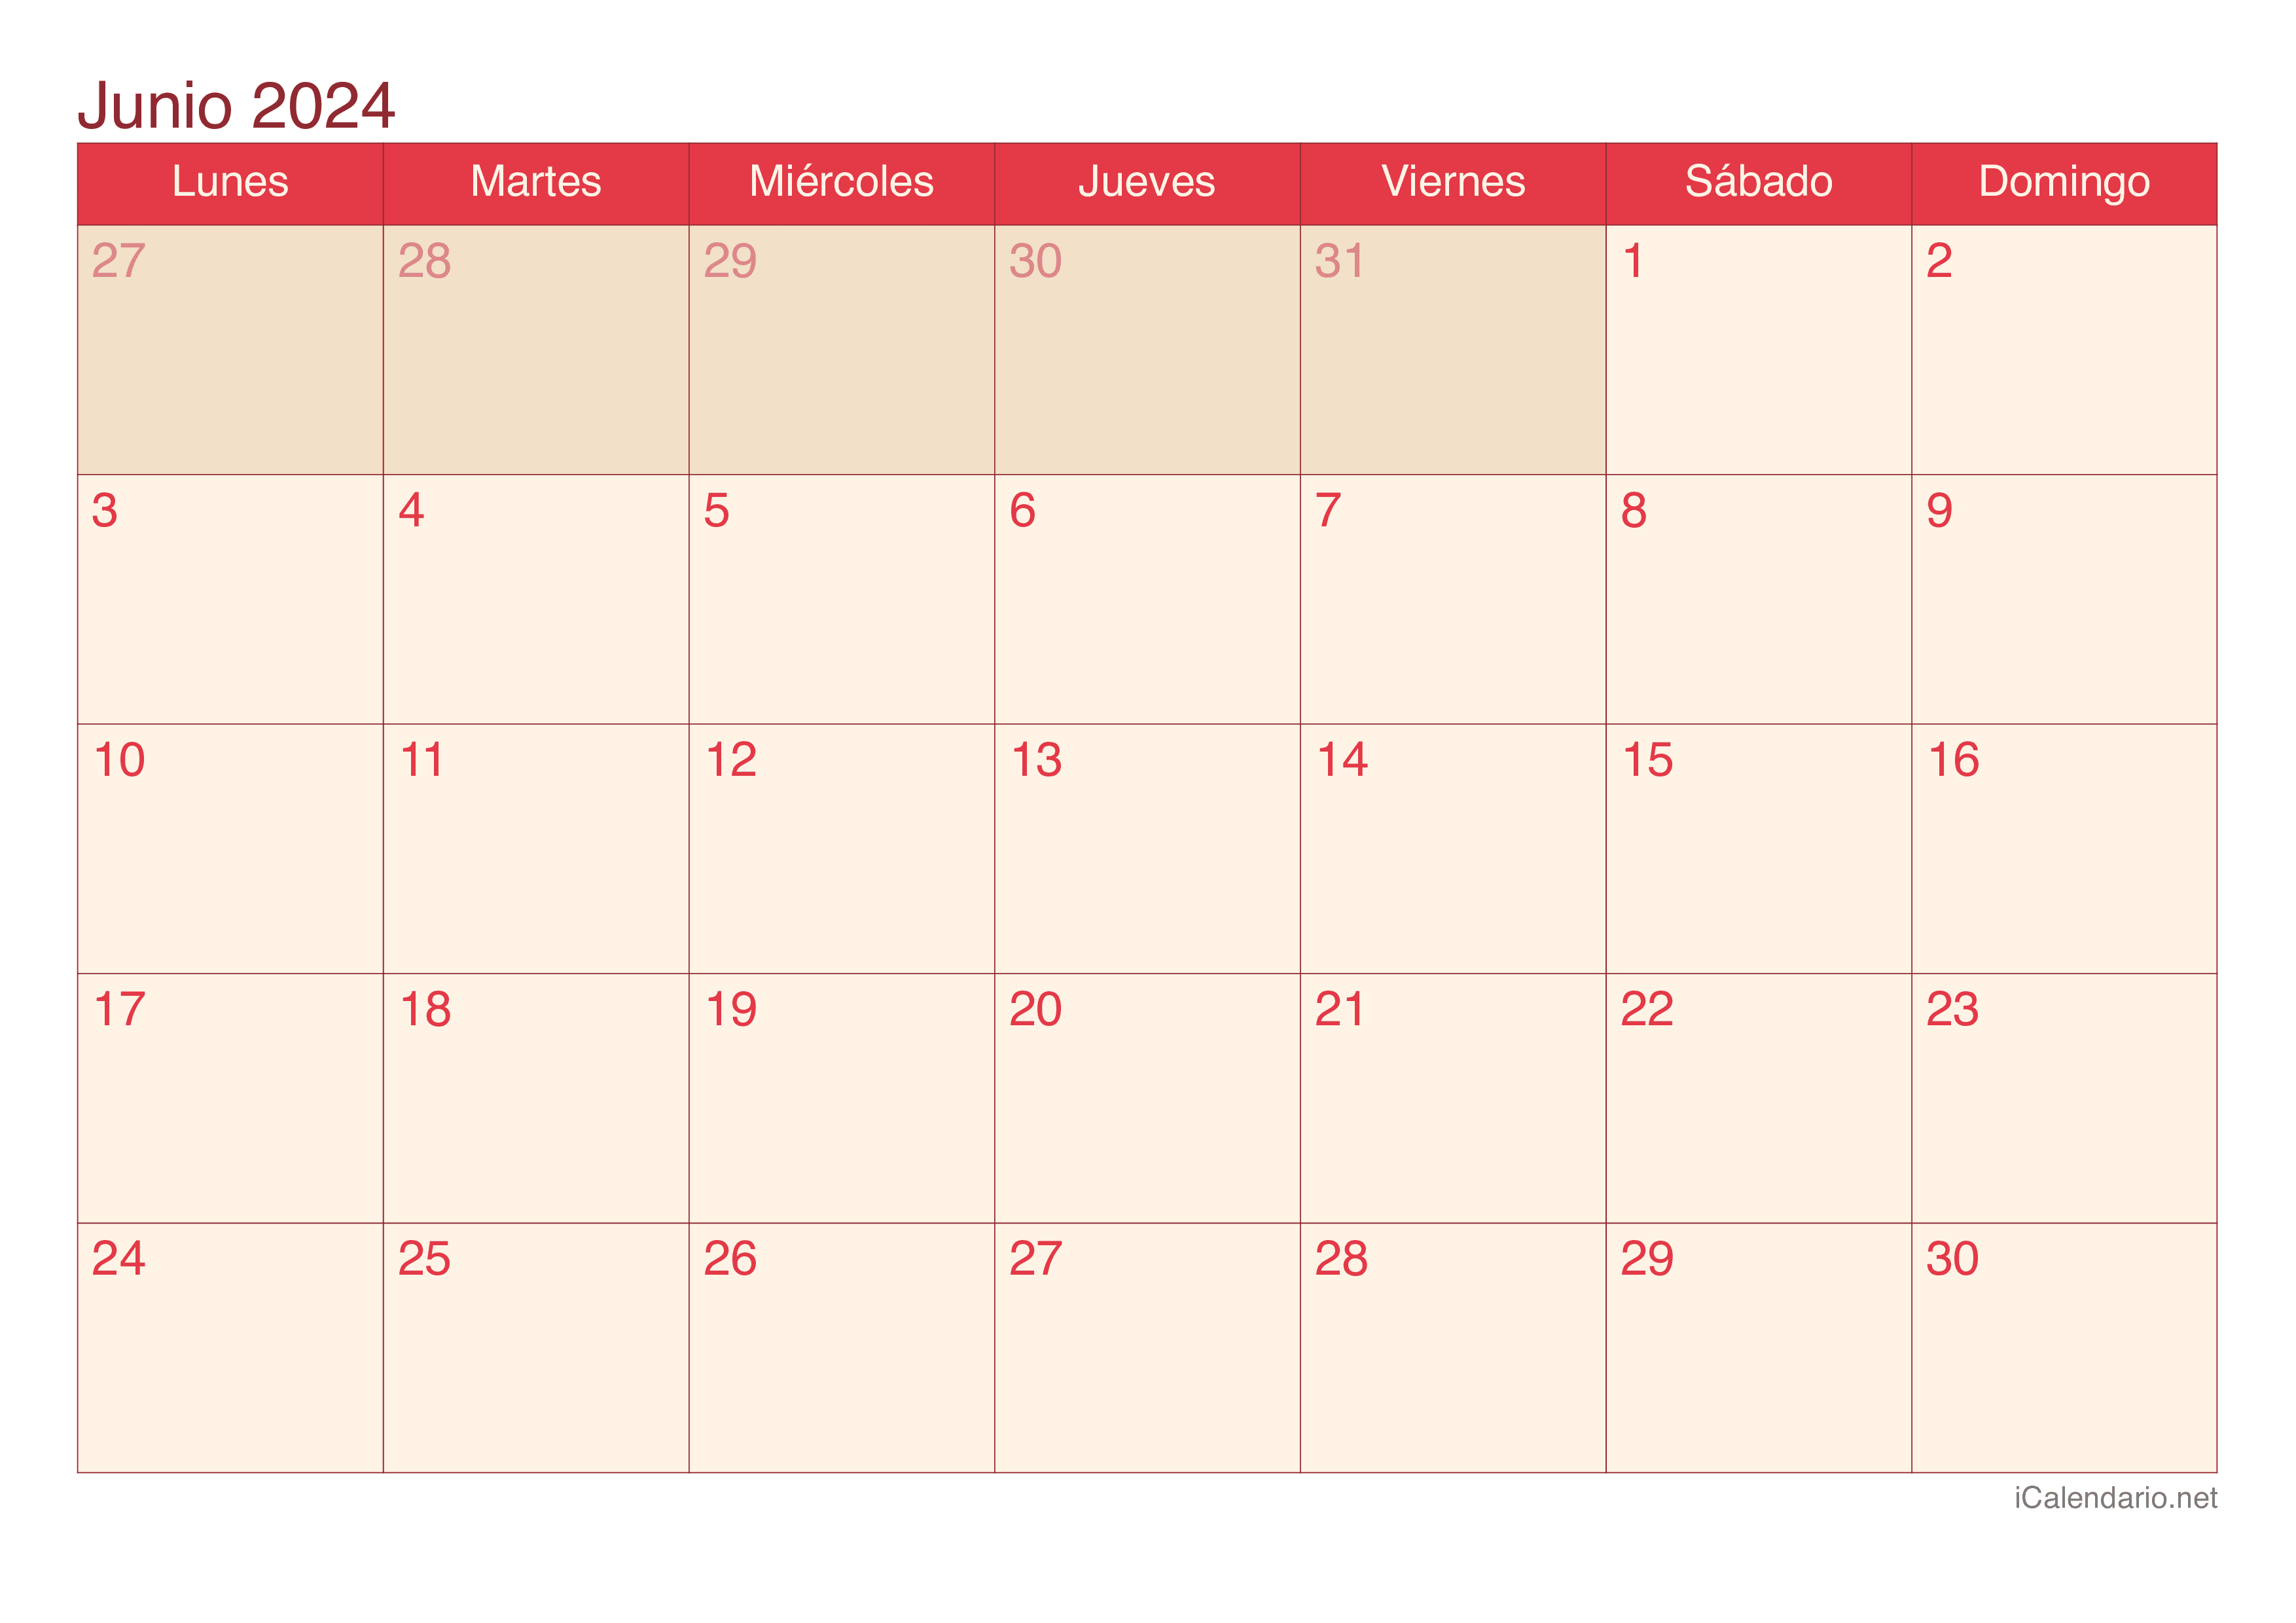 Calendario de junio 2024 - Cherry